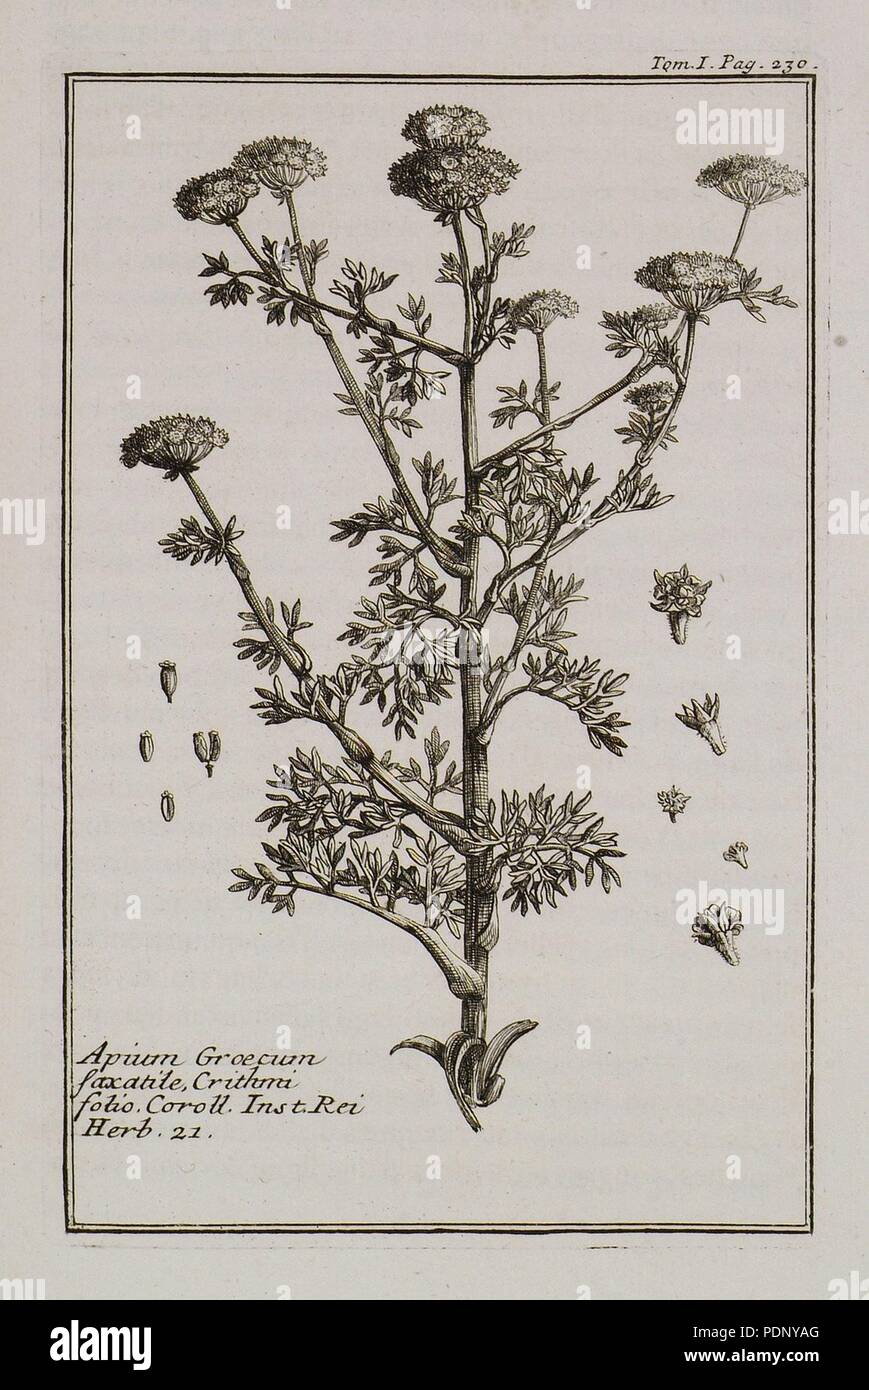 Apium Graecum saxatile, Crithmi folio Coroll Inst Rei herb 21 - Tournefort Joseph Pitton De - 1717. Stock Photo